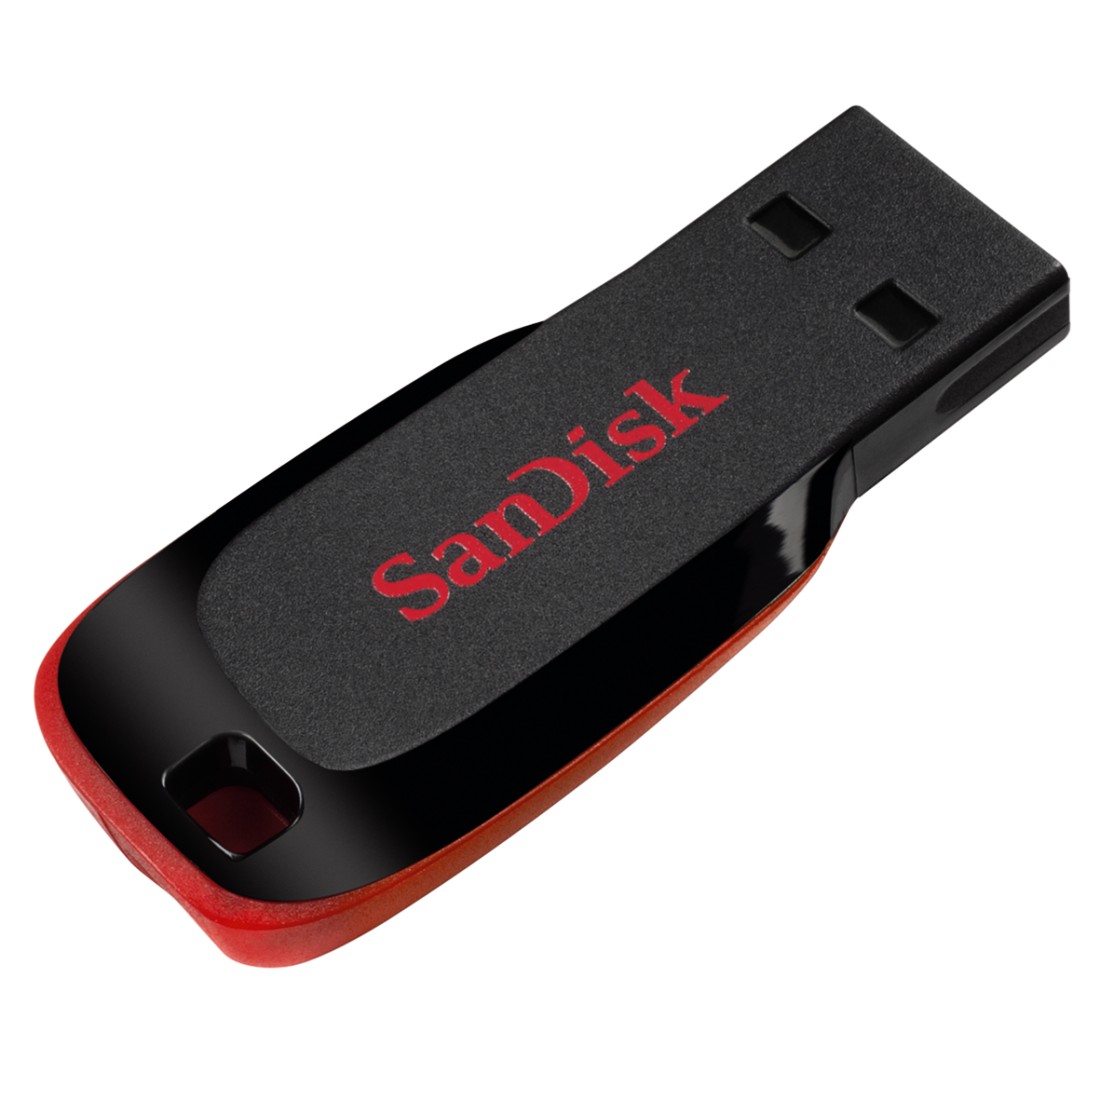 Sandisk Cruzer Blade 128GB SDCZ50-128G-B35